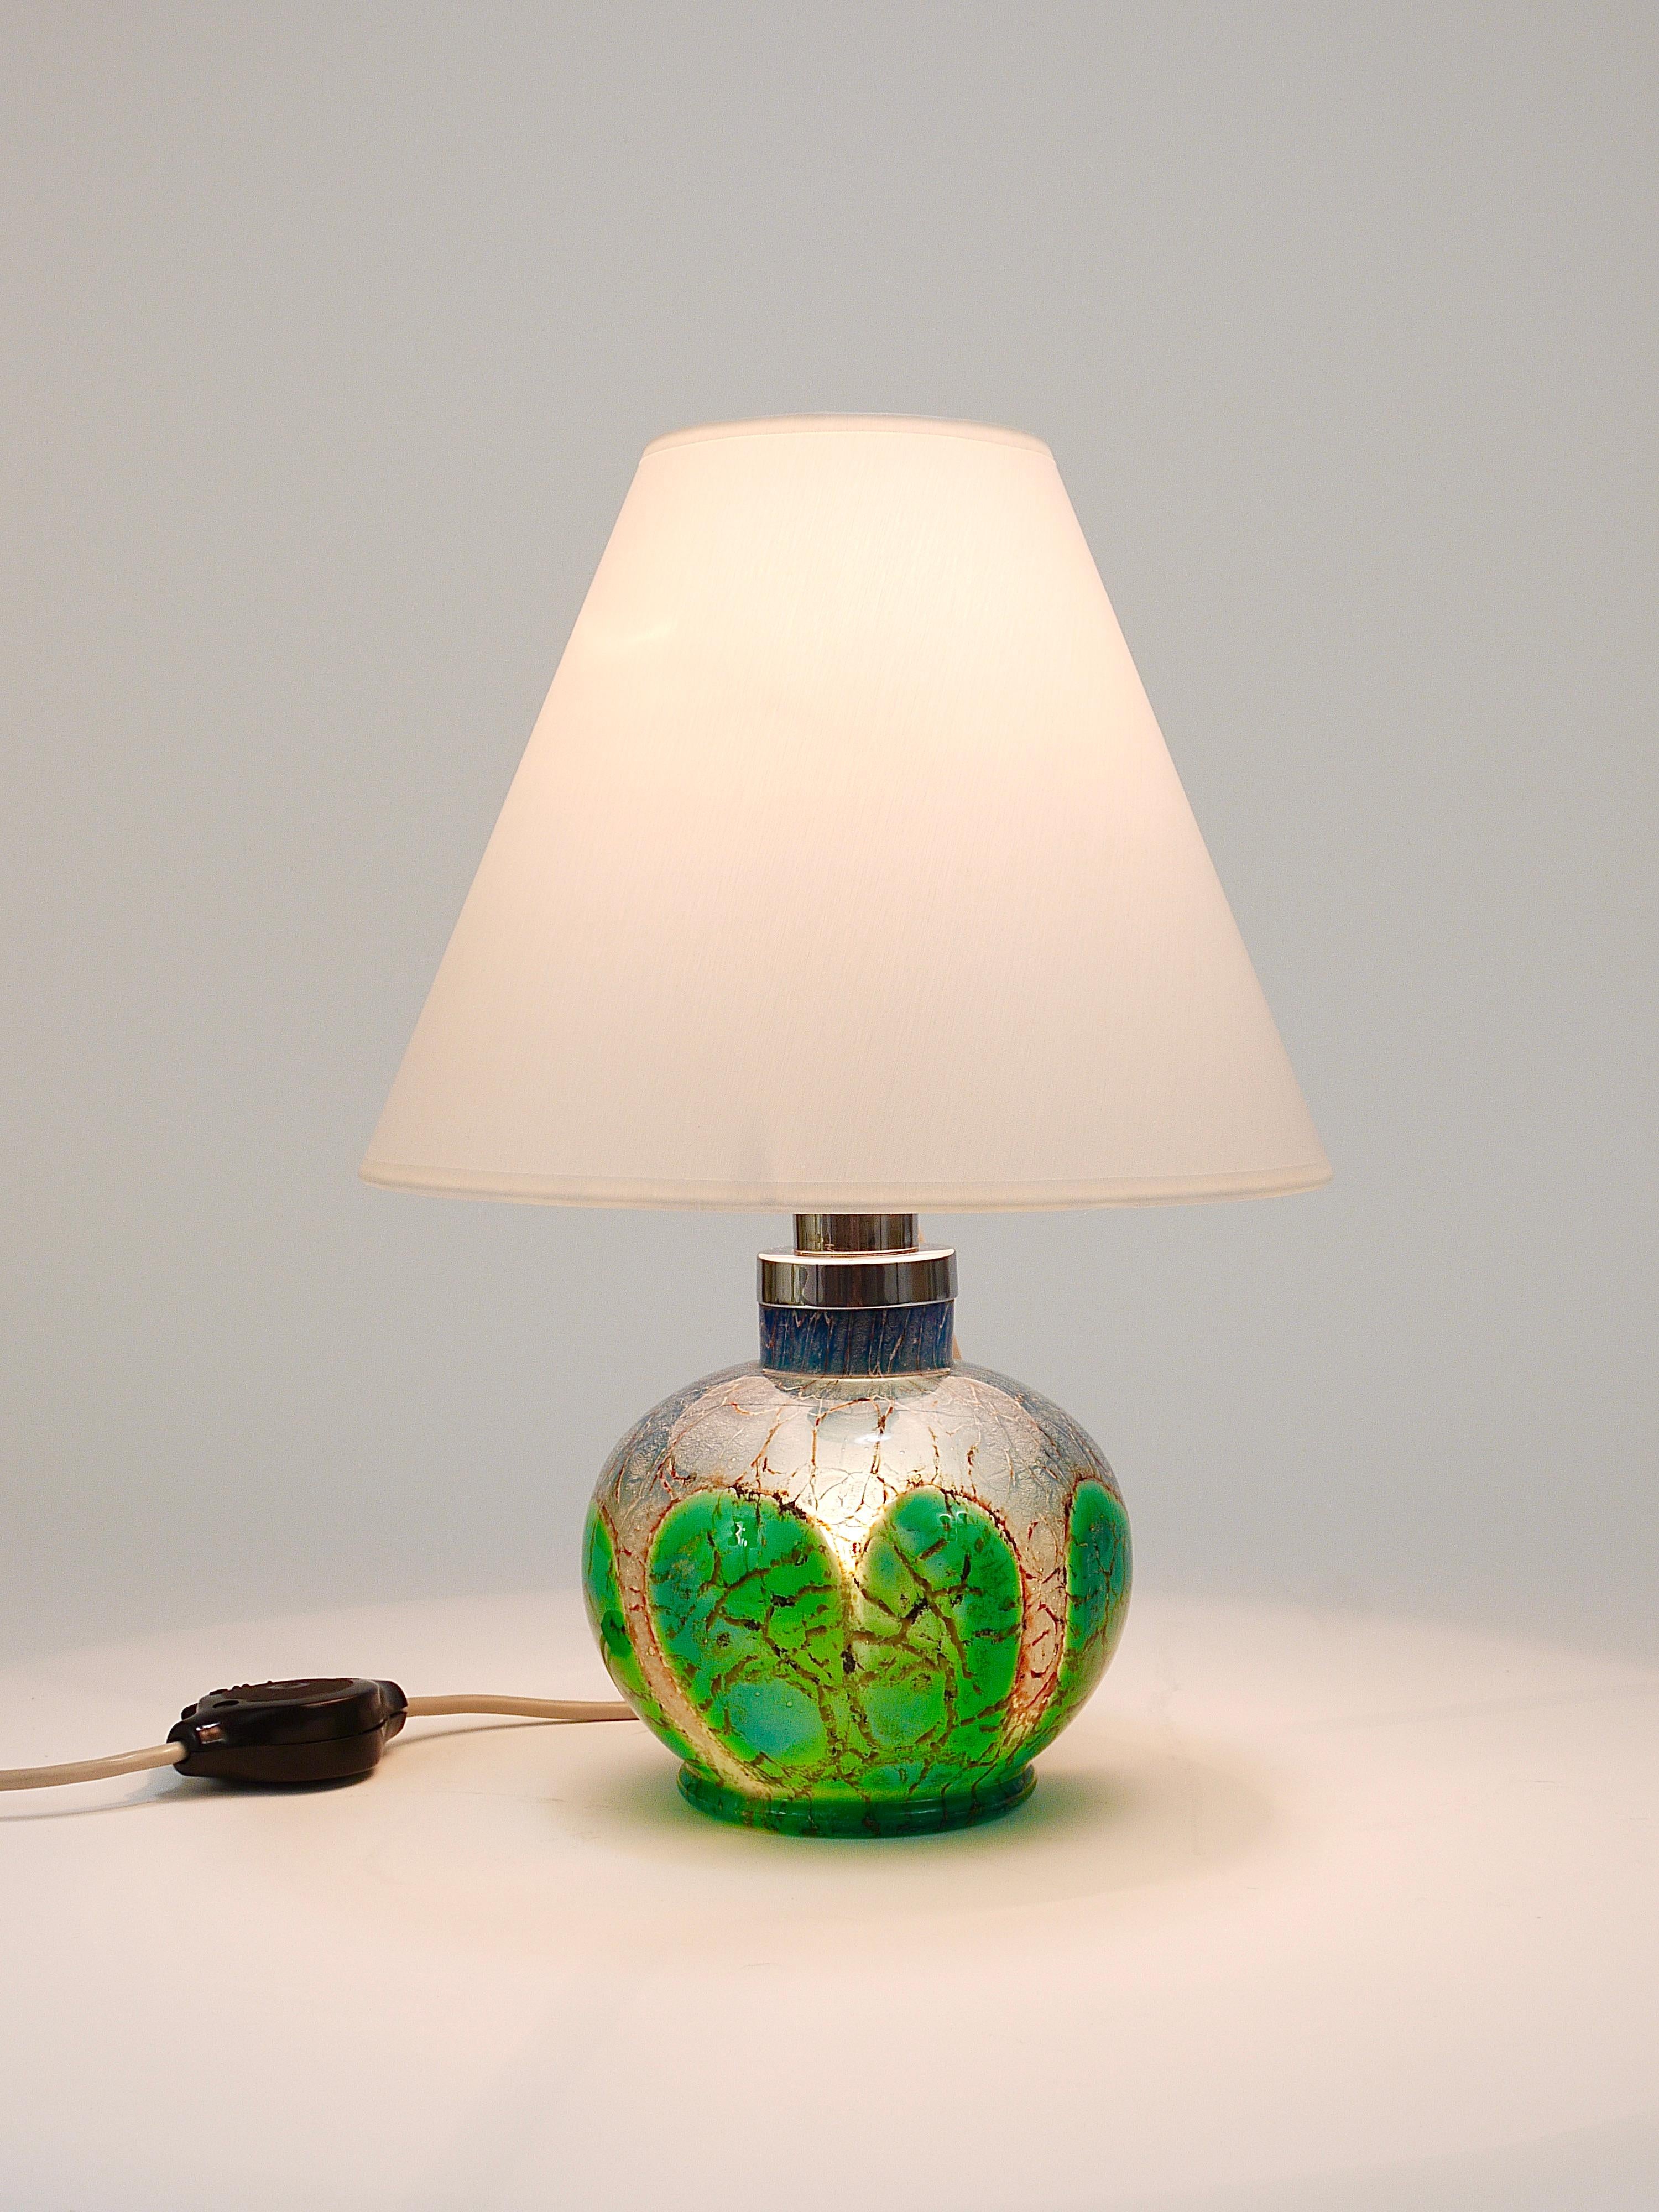 Magnifique lampe de table ou d'appoint Art déco classique des années 1930 par Karl Wiedmann, exécutée par WMF Allemagne. La lampe est dotée d'une base en verre d'art Ikora solide de couleur verte, bleue et argentée, qui peut être éclairée. Cela a